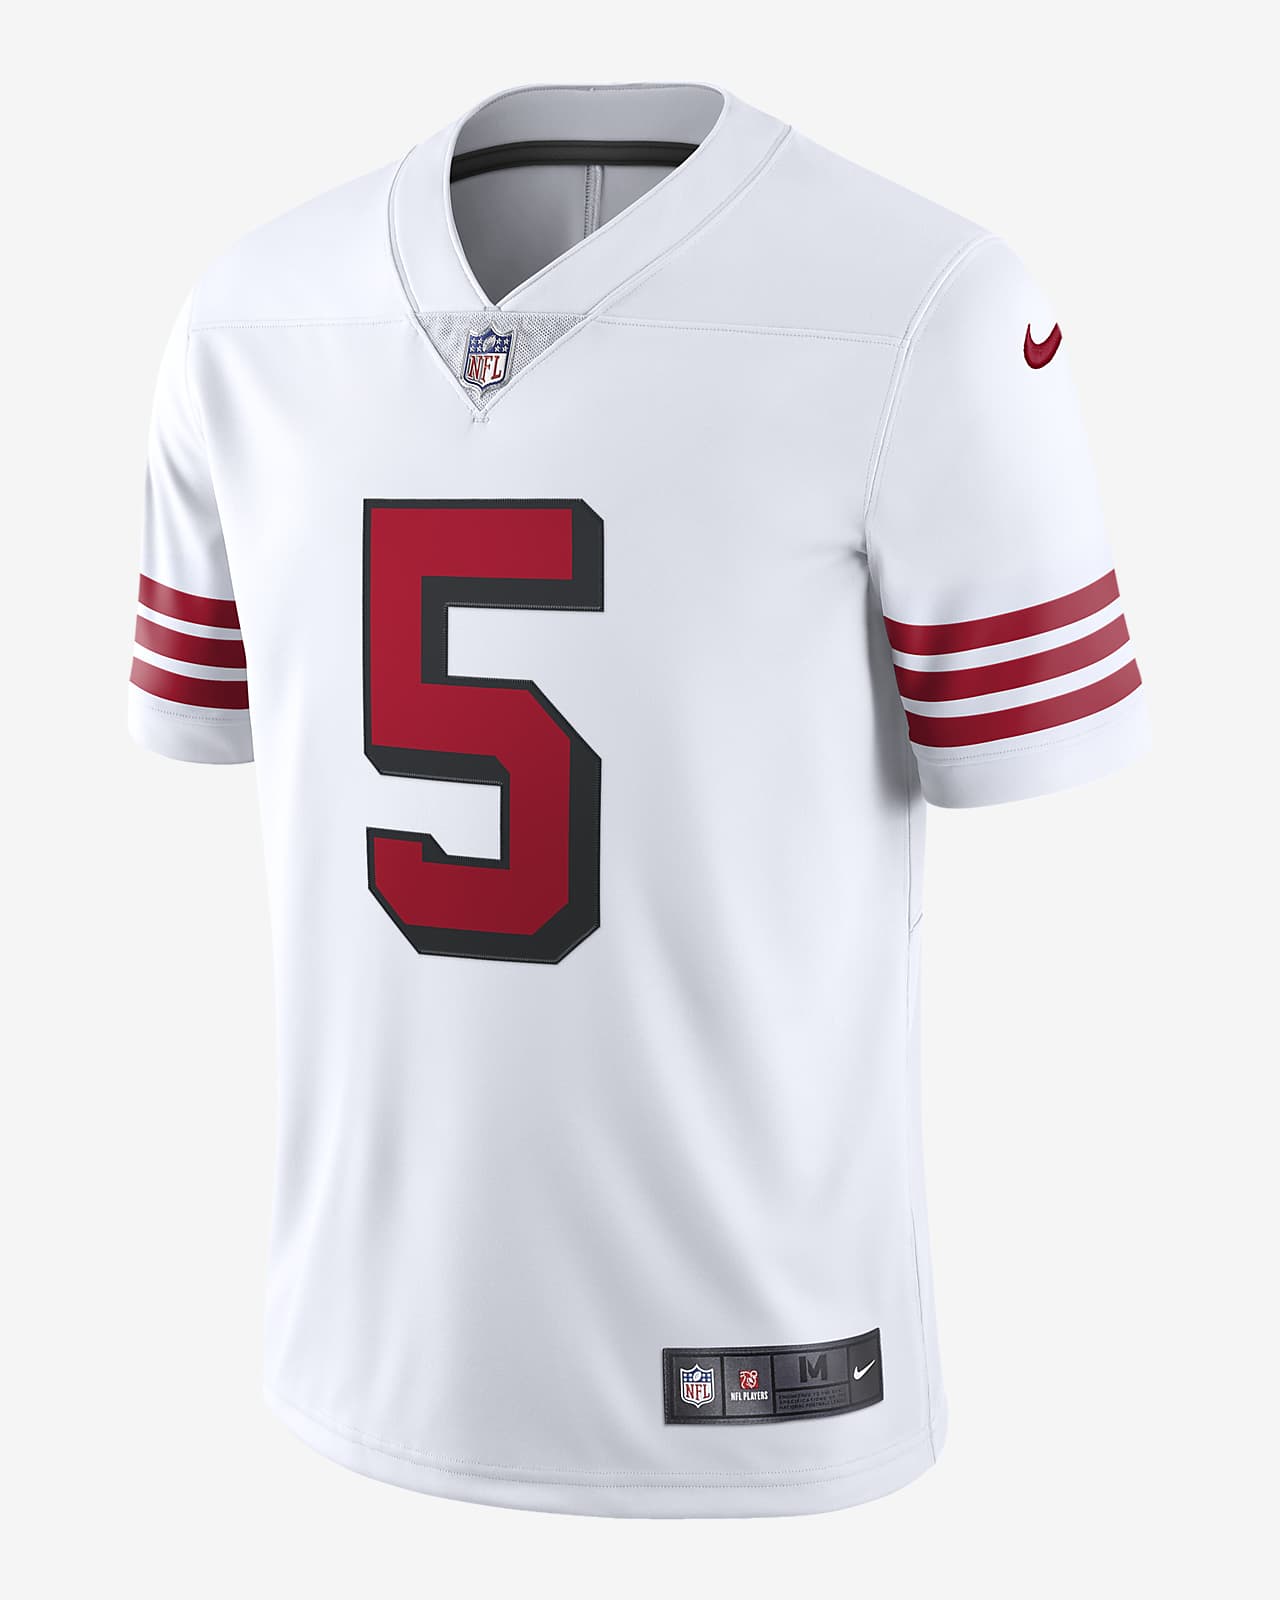 Jersey fútbol edición limitada para hombre NFL San Francisco Nike Vapor Untouchable (Trey Lance). Nike.com